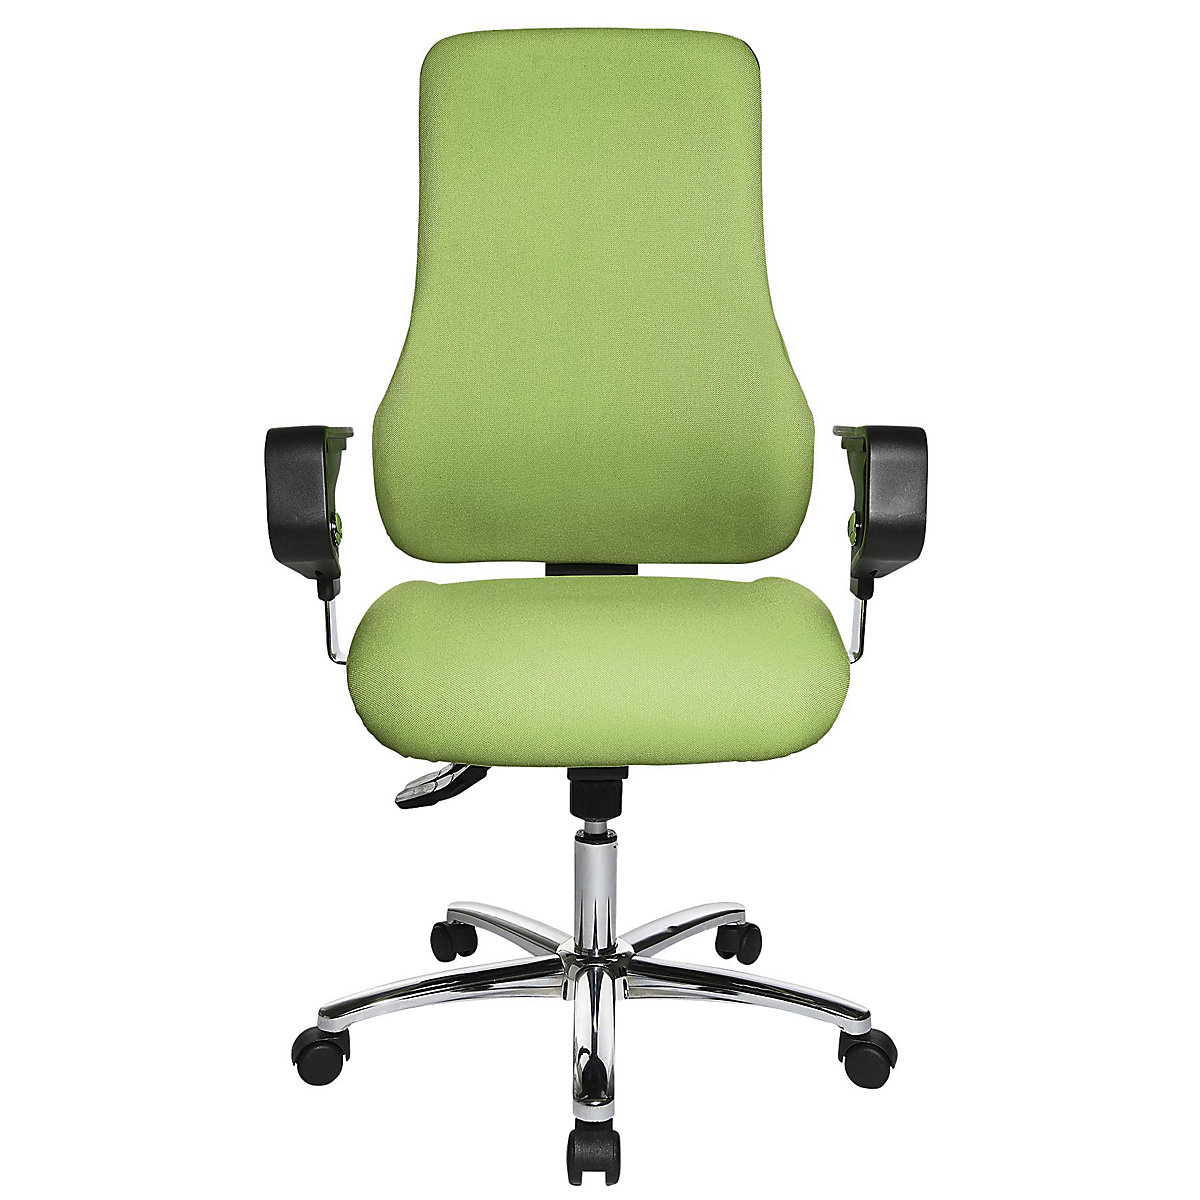 Siège de bureau pivotant avec accoudoirs – Topstar, hauteur dossier 600 mm, habillage vert pomme-6